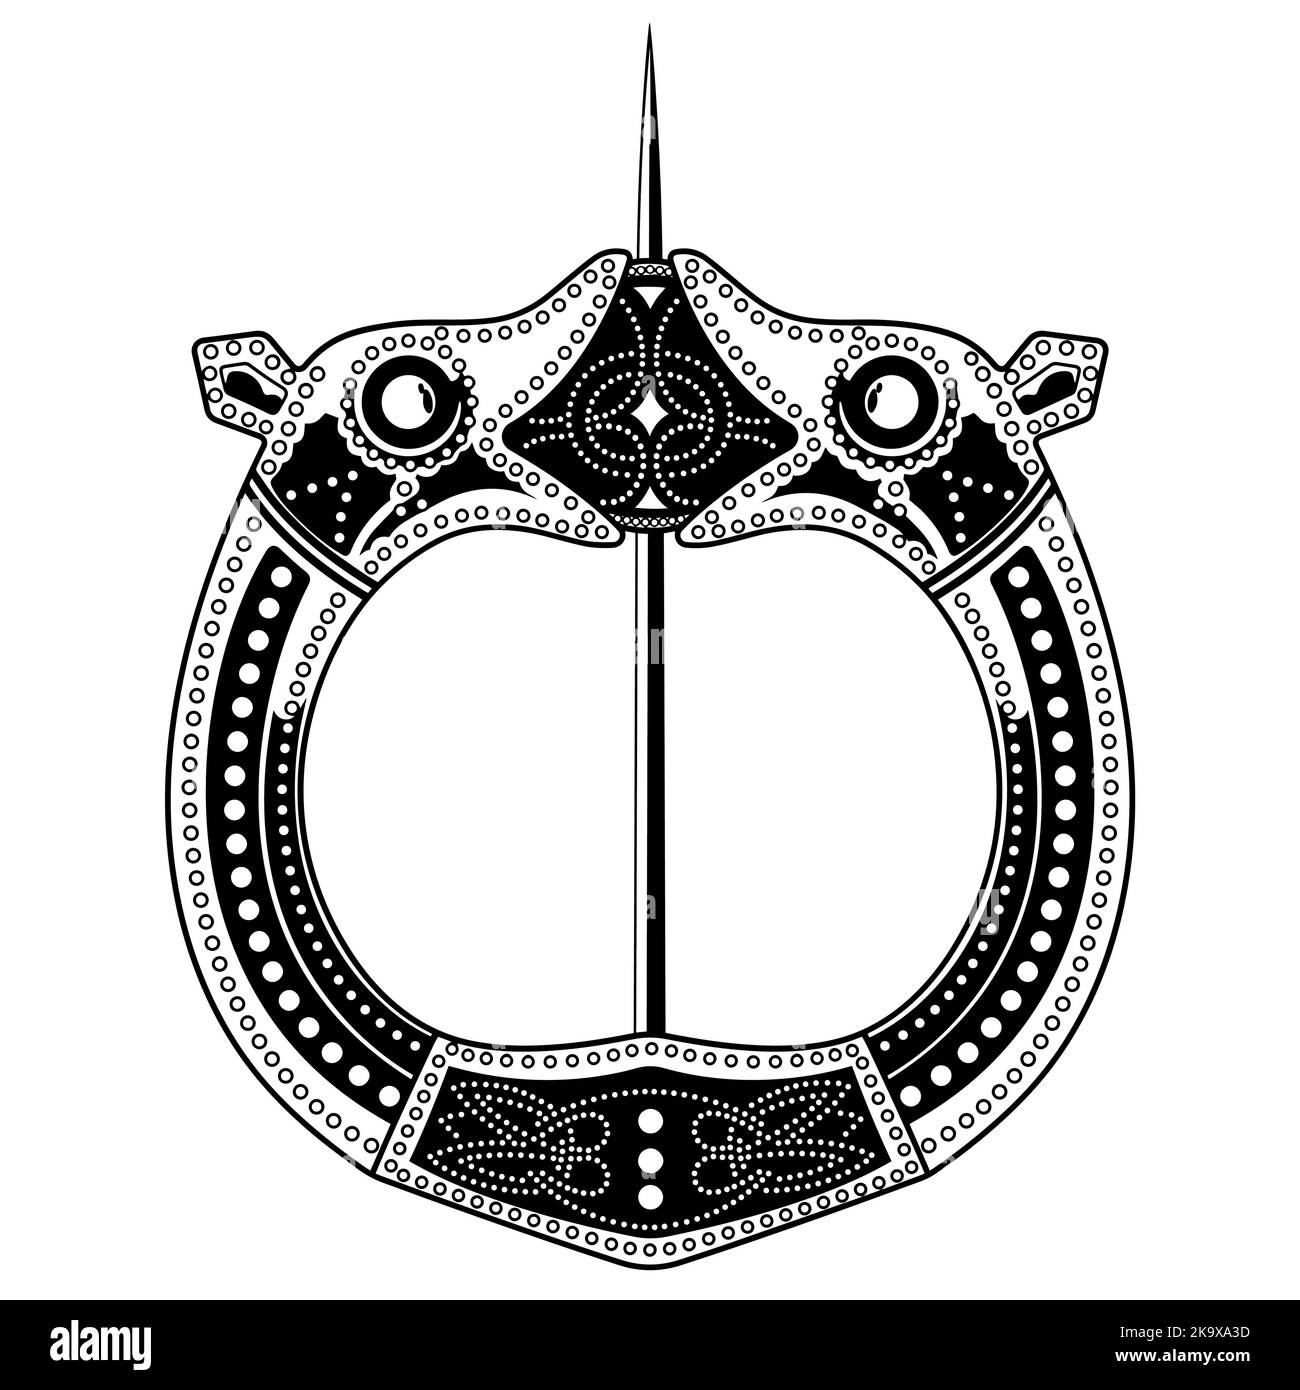 Brosche Fibula. Mittelalterliche Wikinger, keltische, germanische traditionelle Dekoration, Verschluss für einen Umhang Stock Vektor